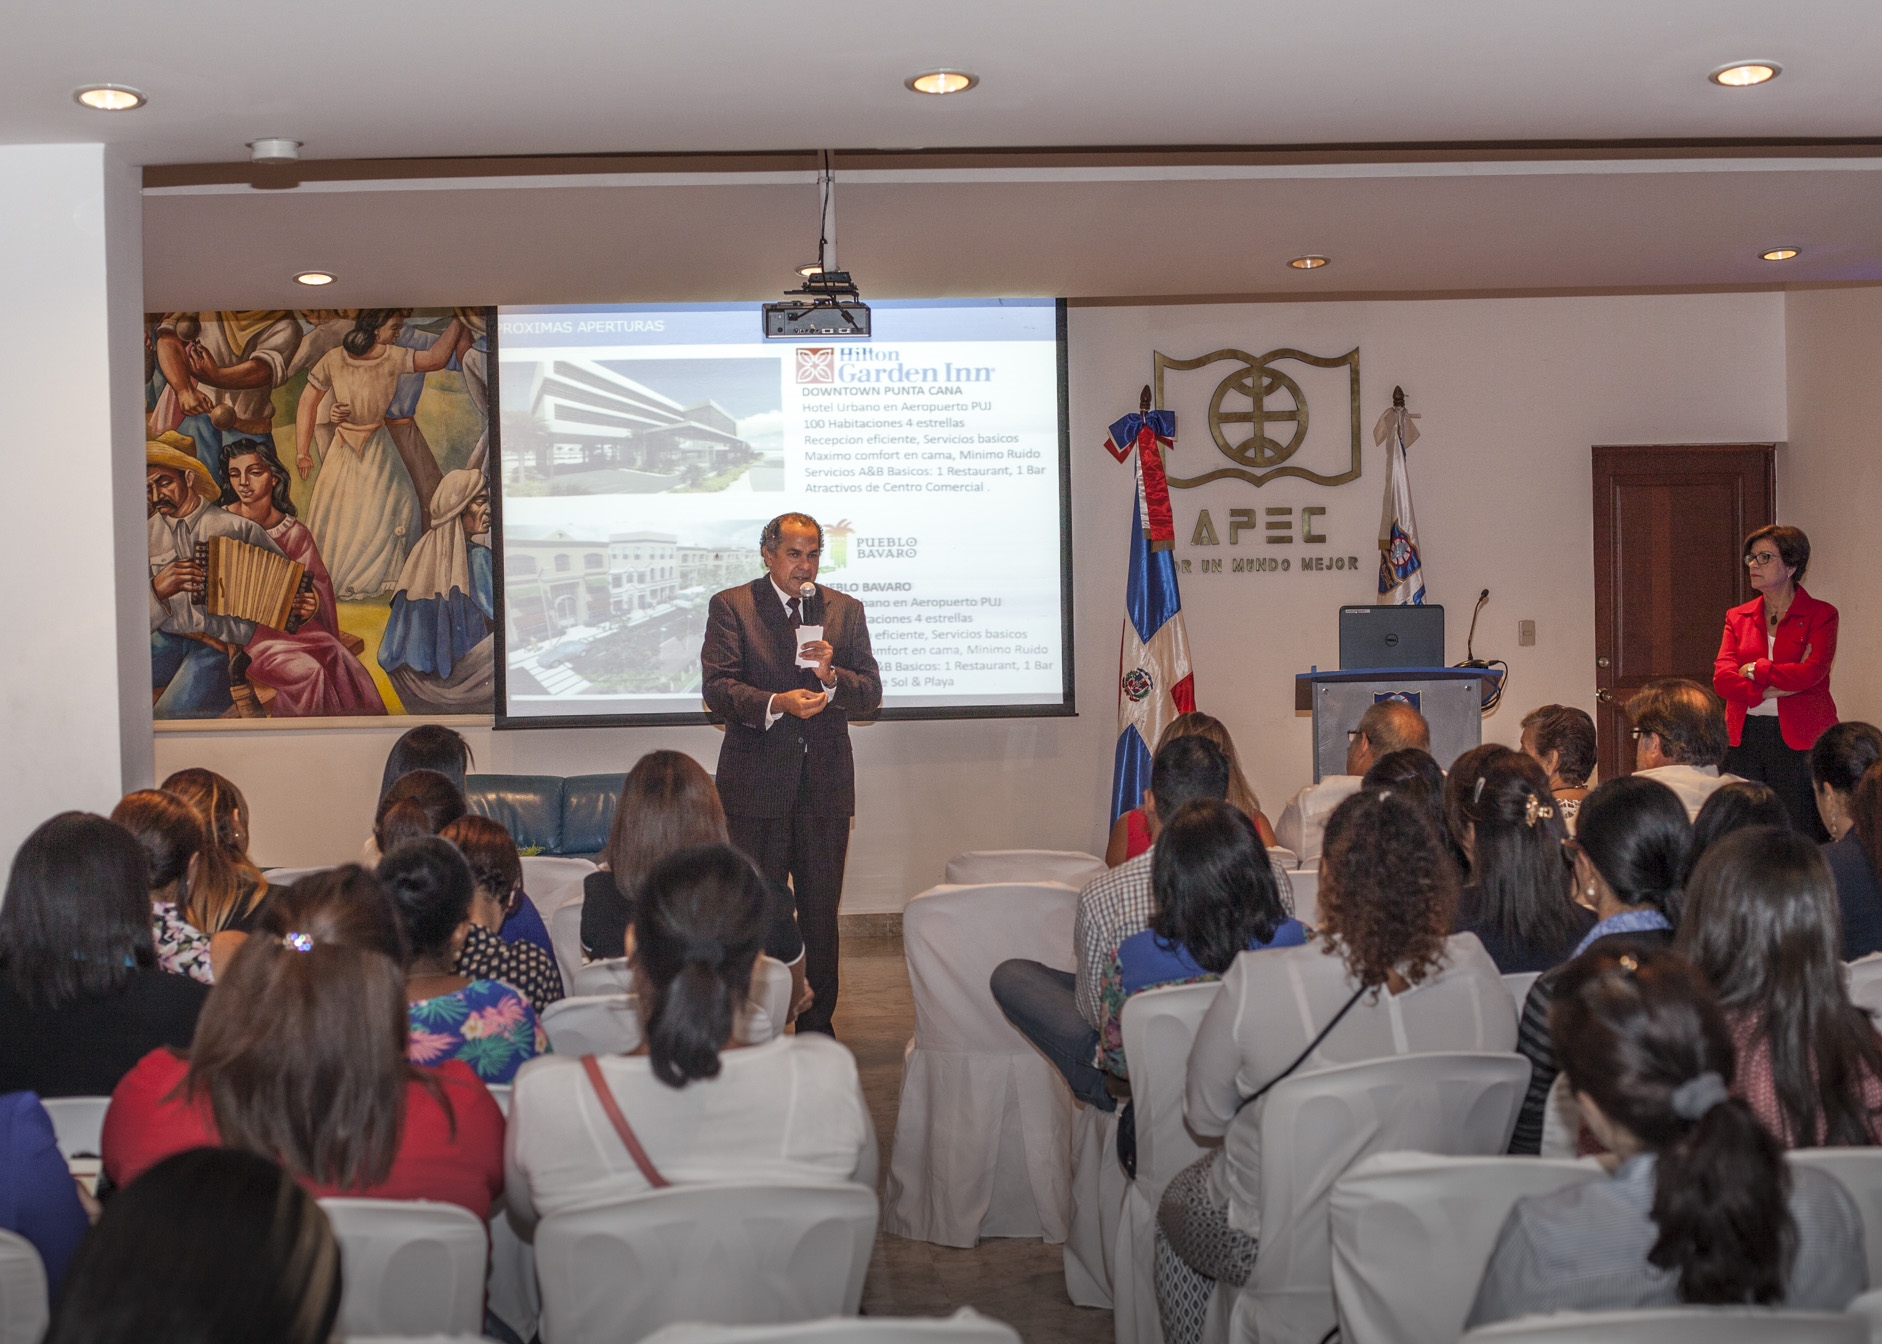 La actividad se celebró el pasado 28 de septiembre en el Salón Apec de la Cultura, José María Bonetti Burgos.